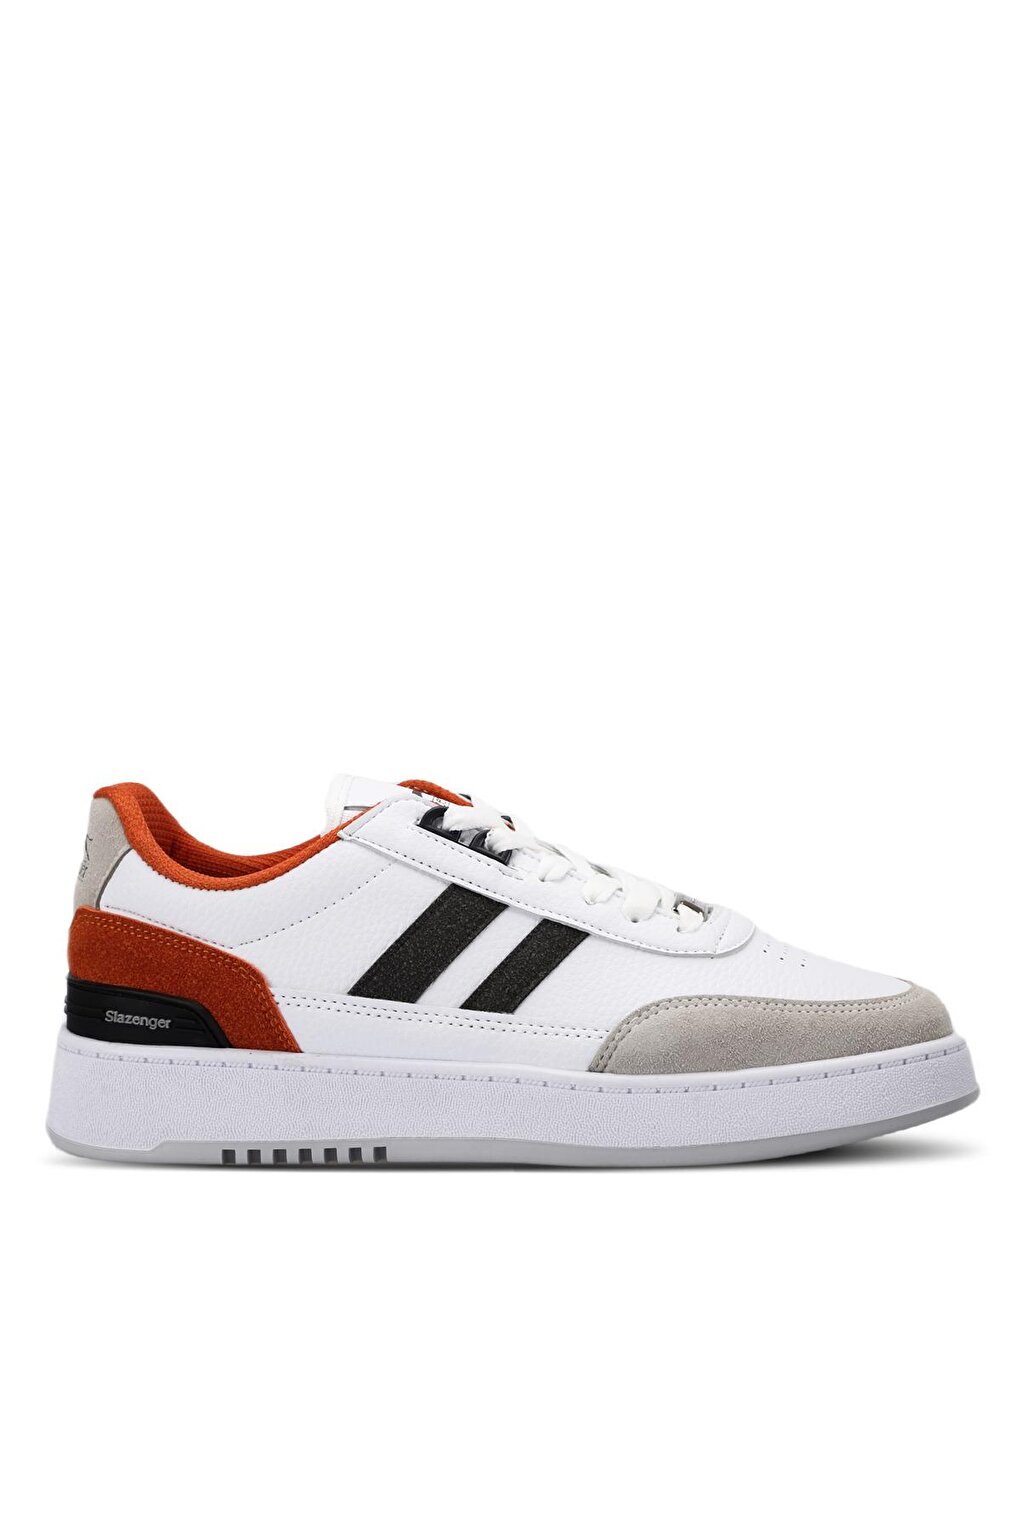 DAPHNE Sneaker Мужская обувь Белый/Оранжевый SLAZENGER комплект мебели бело оранжевый